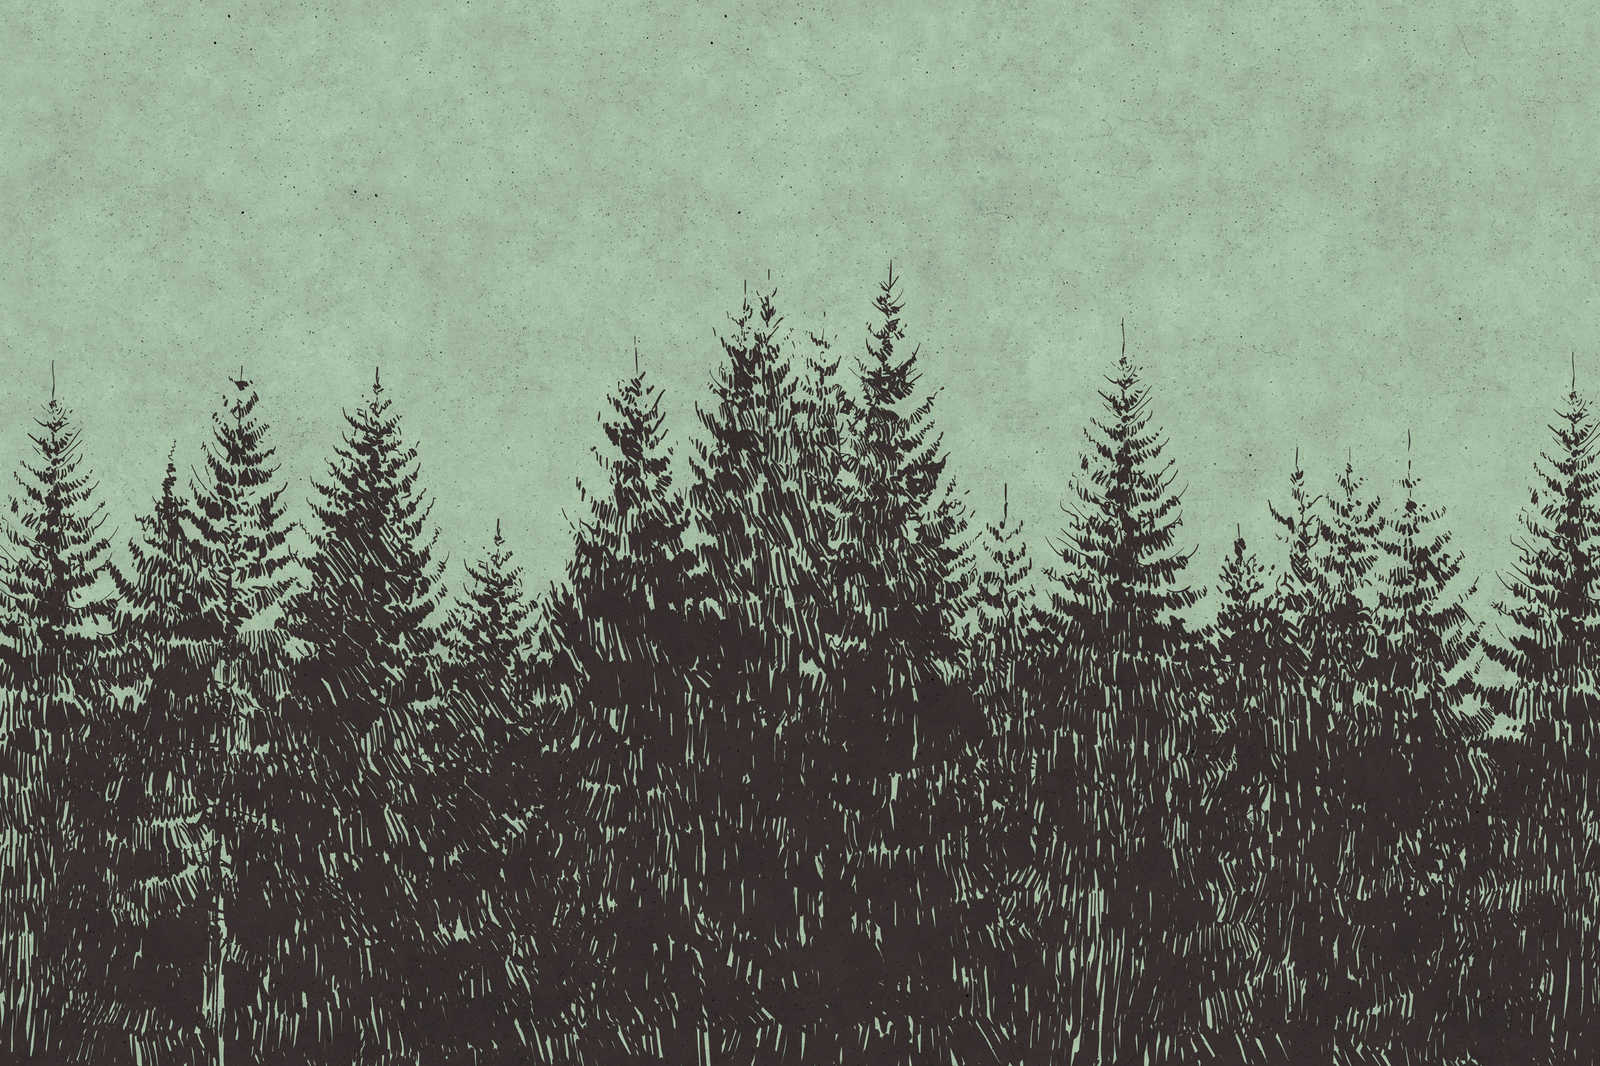             Wald Leinwandbild im Zeichenstil Tannenspitzen – 0,90 m x 0,60 m
        